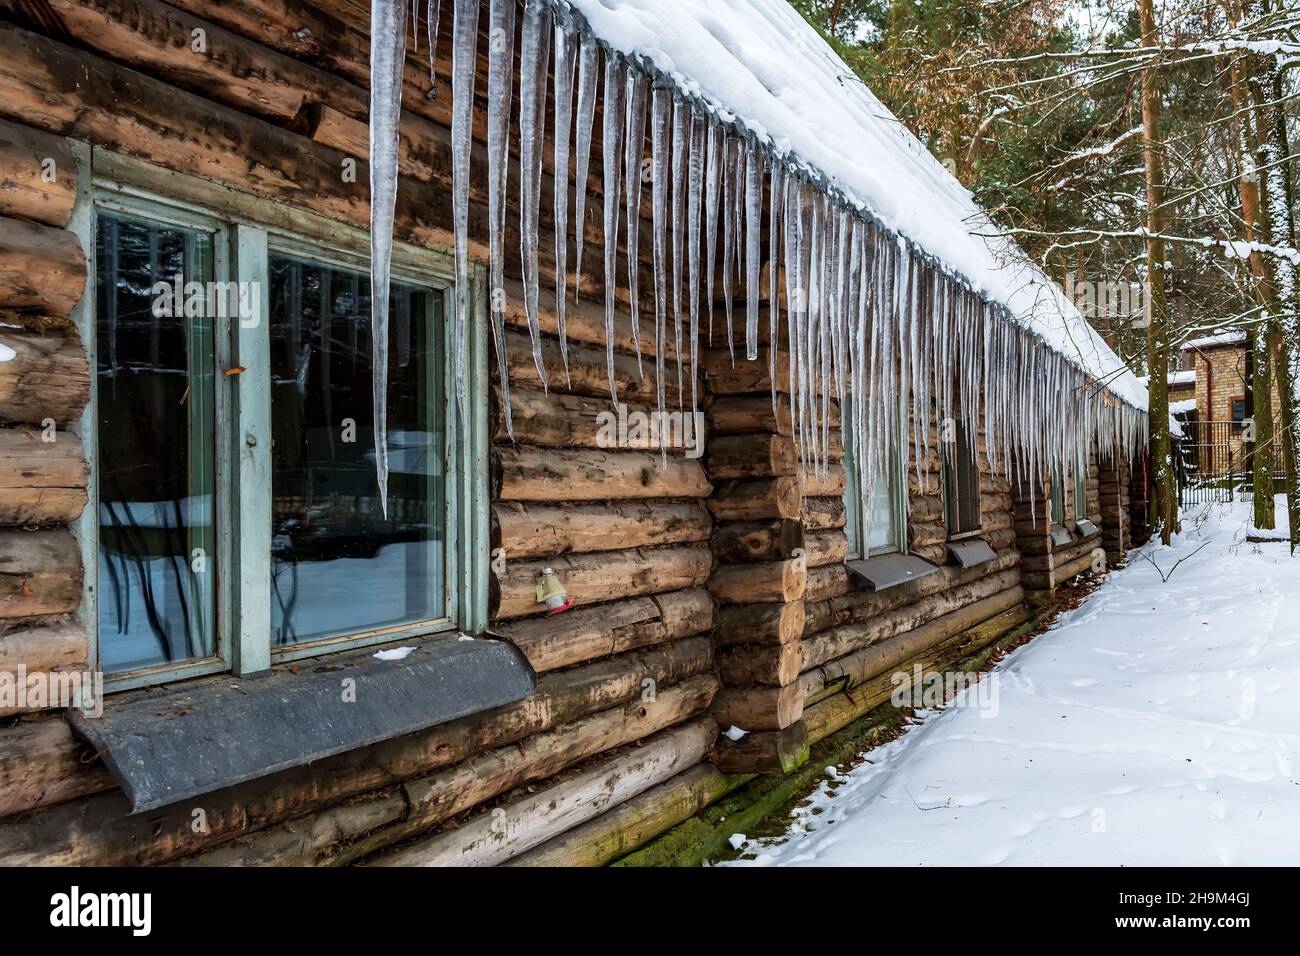 Molte grandi ghiacciate pendenti dal tetto della casetta nella foresta innevata. La vecchia capanna è coperta di ghiaccio in inverno. Foto Stock